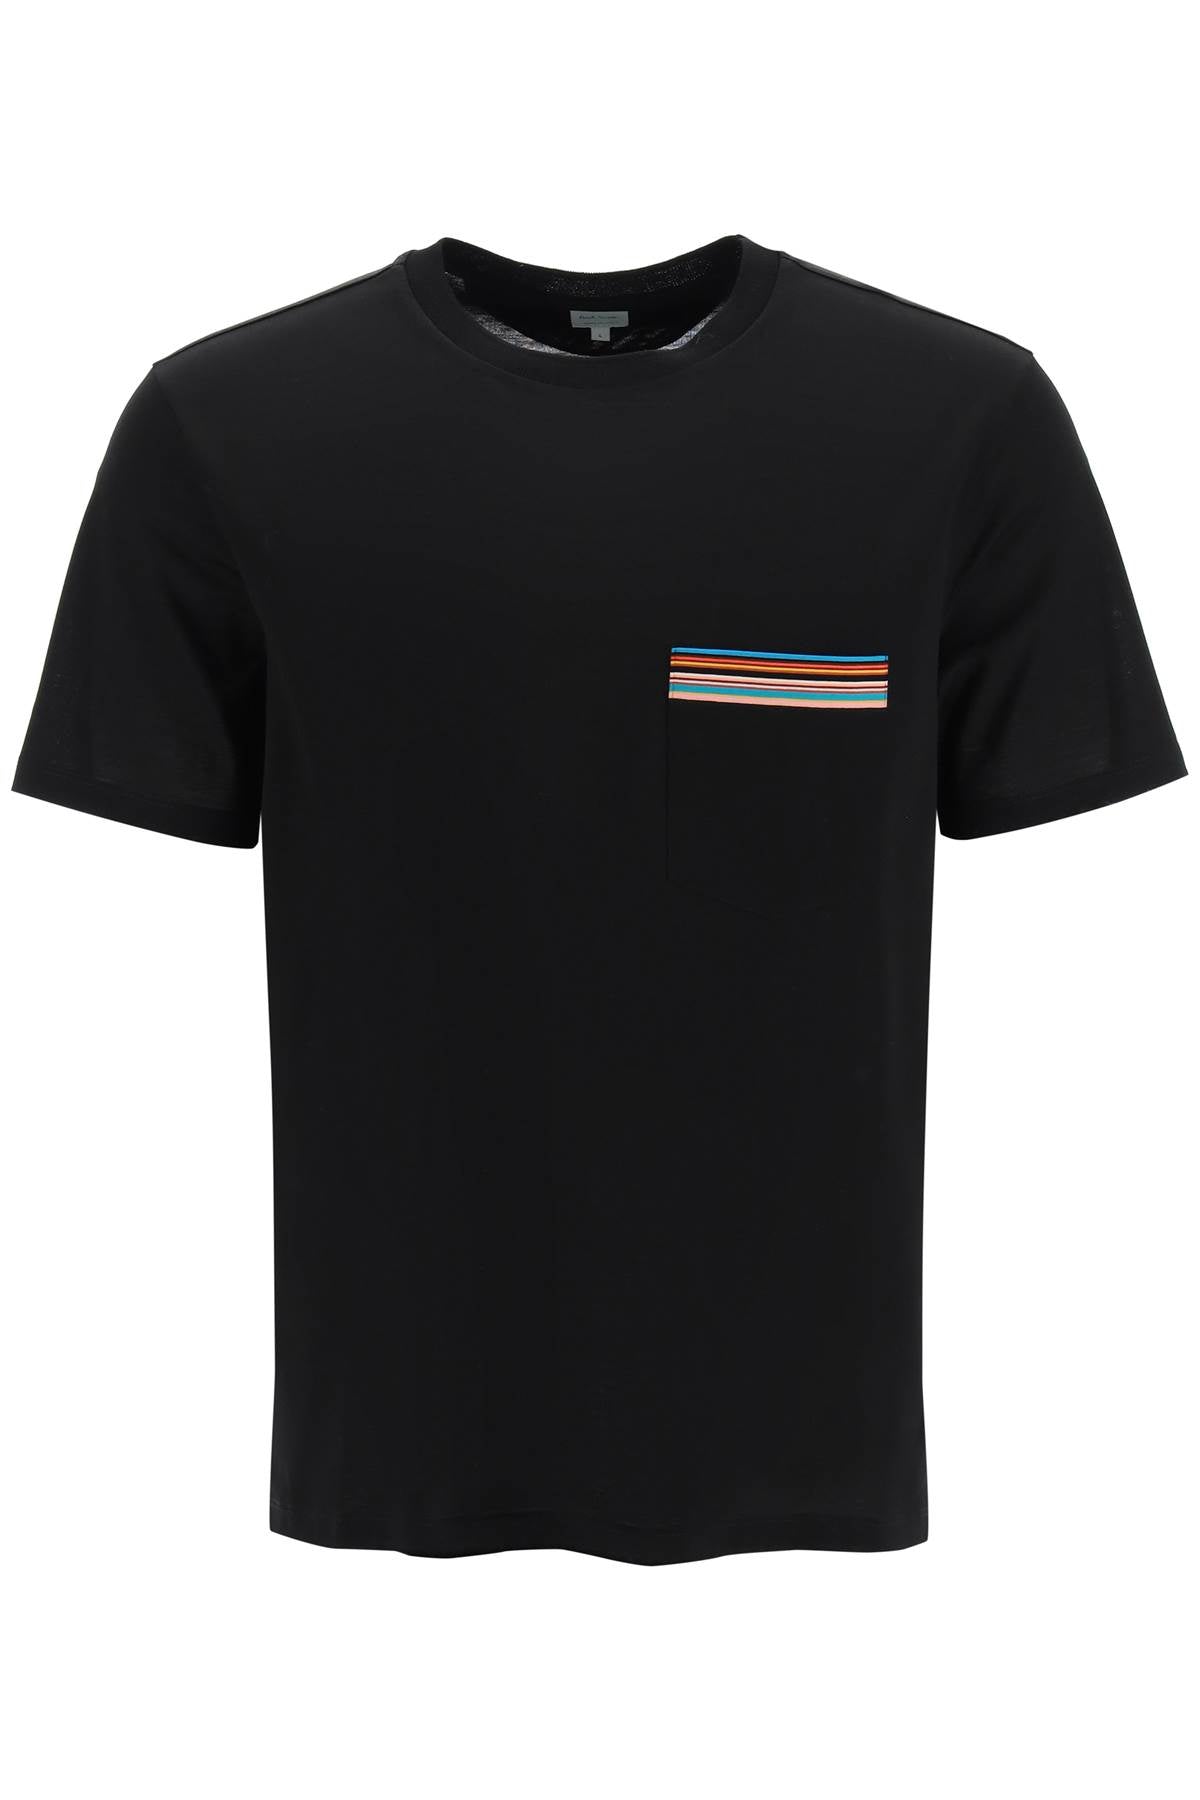 Paul Smith-T Shirt Con Tasca 'Signature Stripe'-Uomo